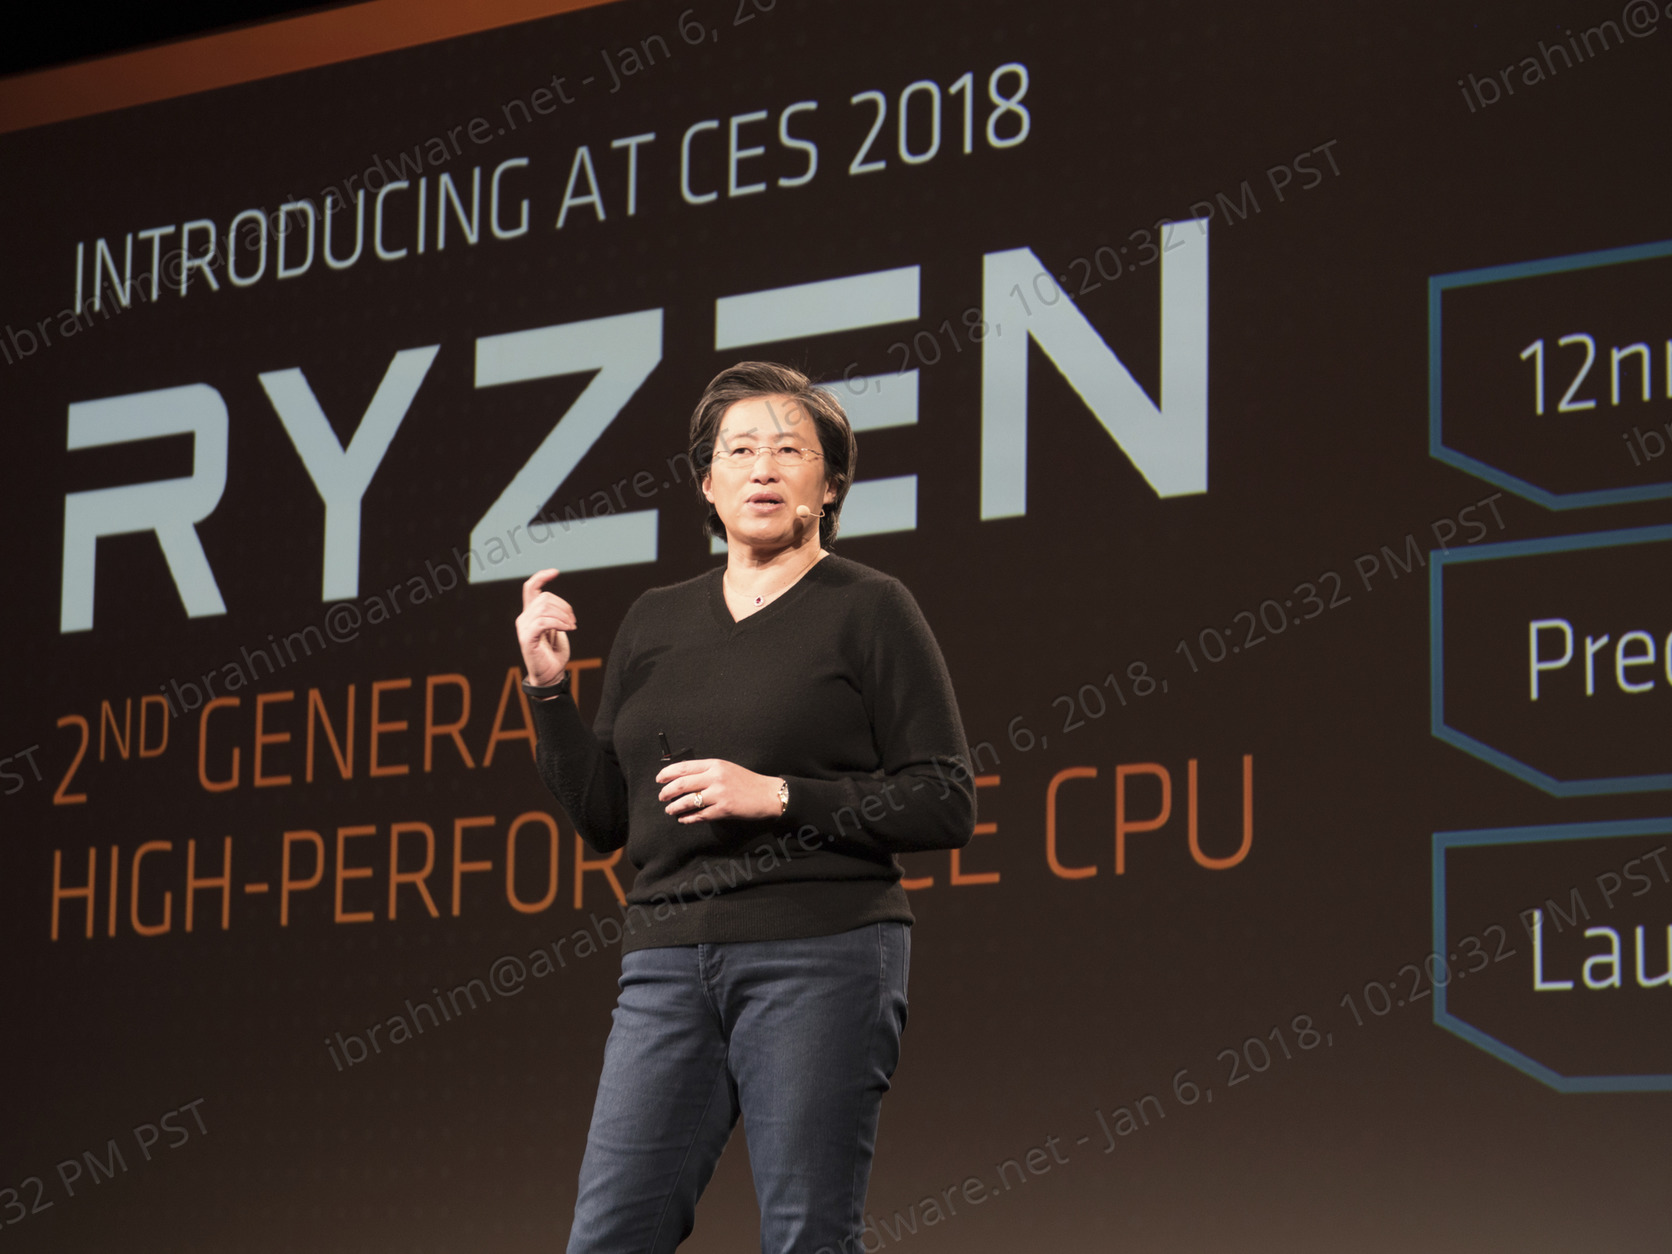 معرض CES2018: شركة AMD تعلن عن معالجات Ryzen 2/Ryzen APU و Vega بدقة 7nm